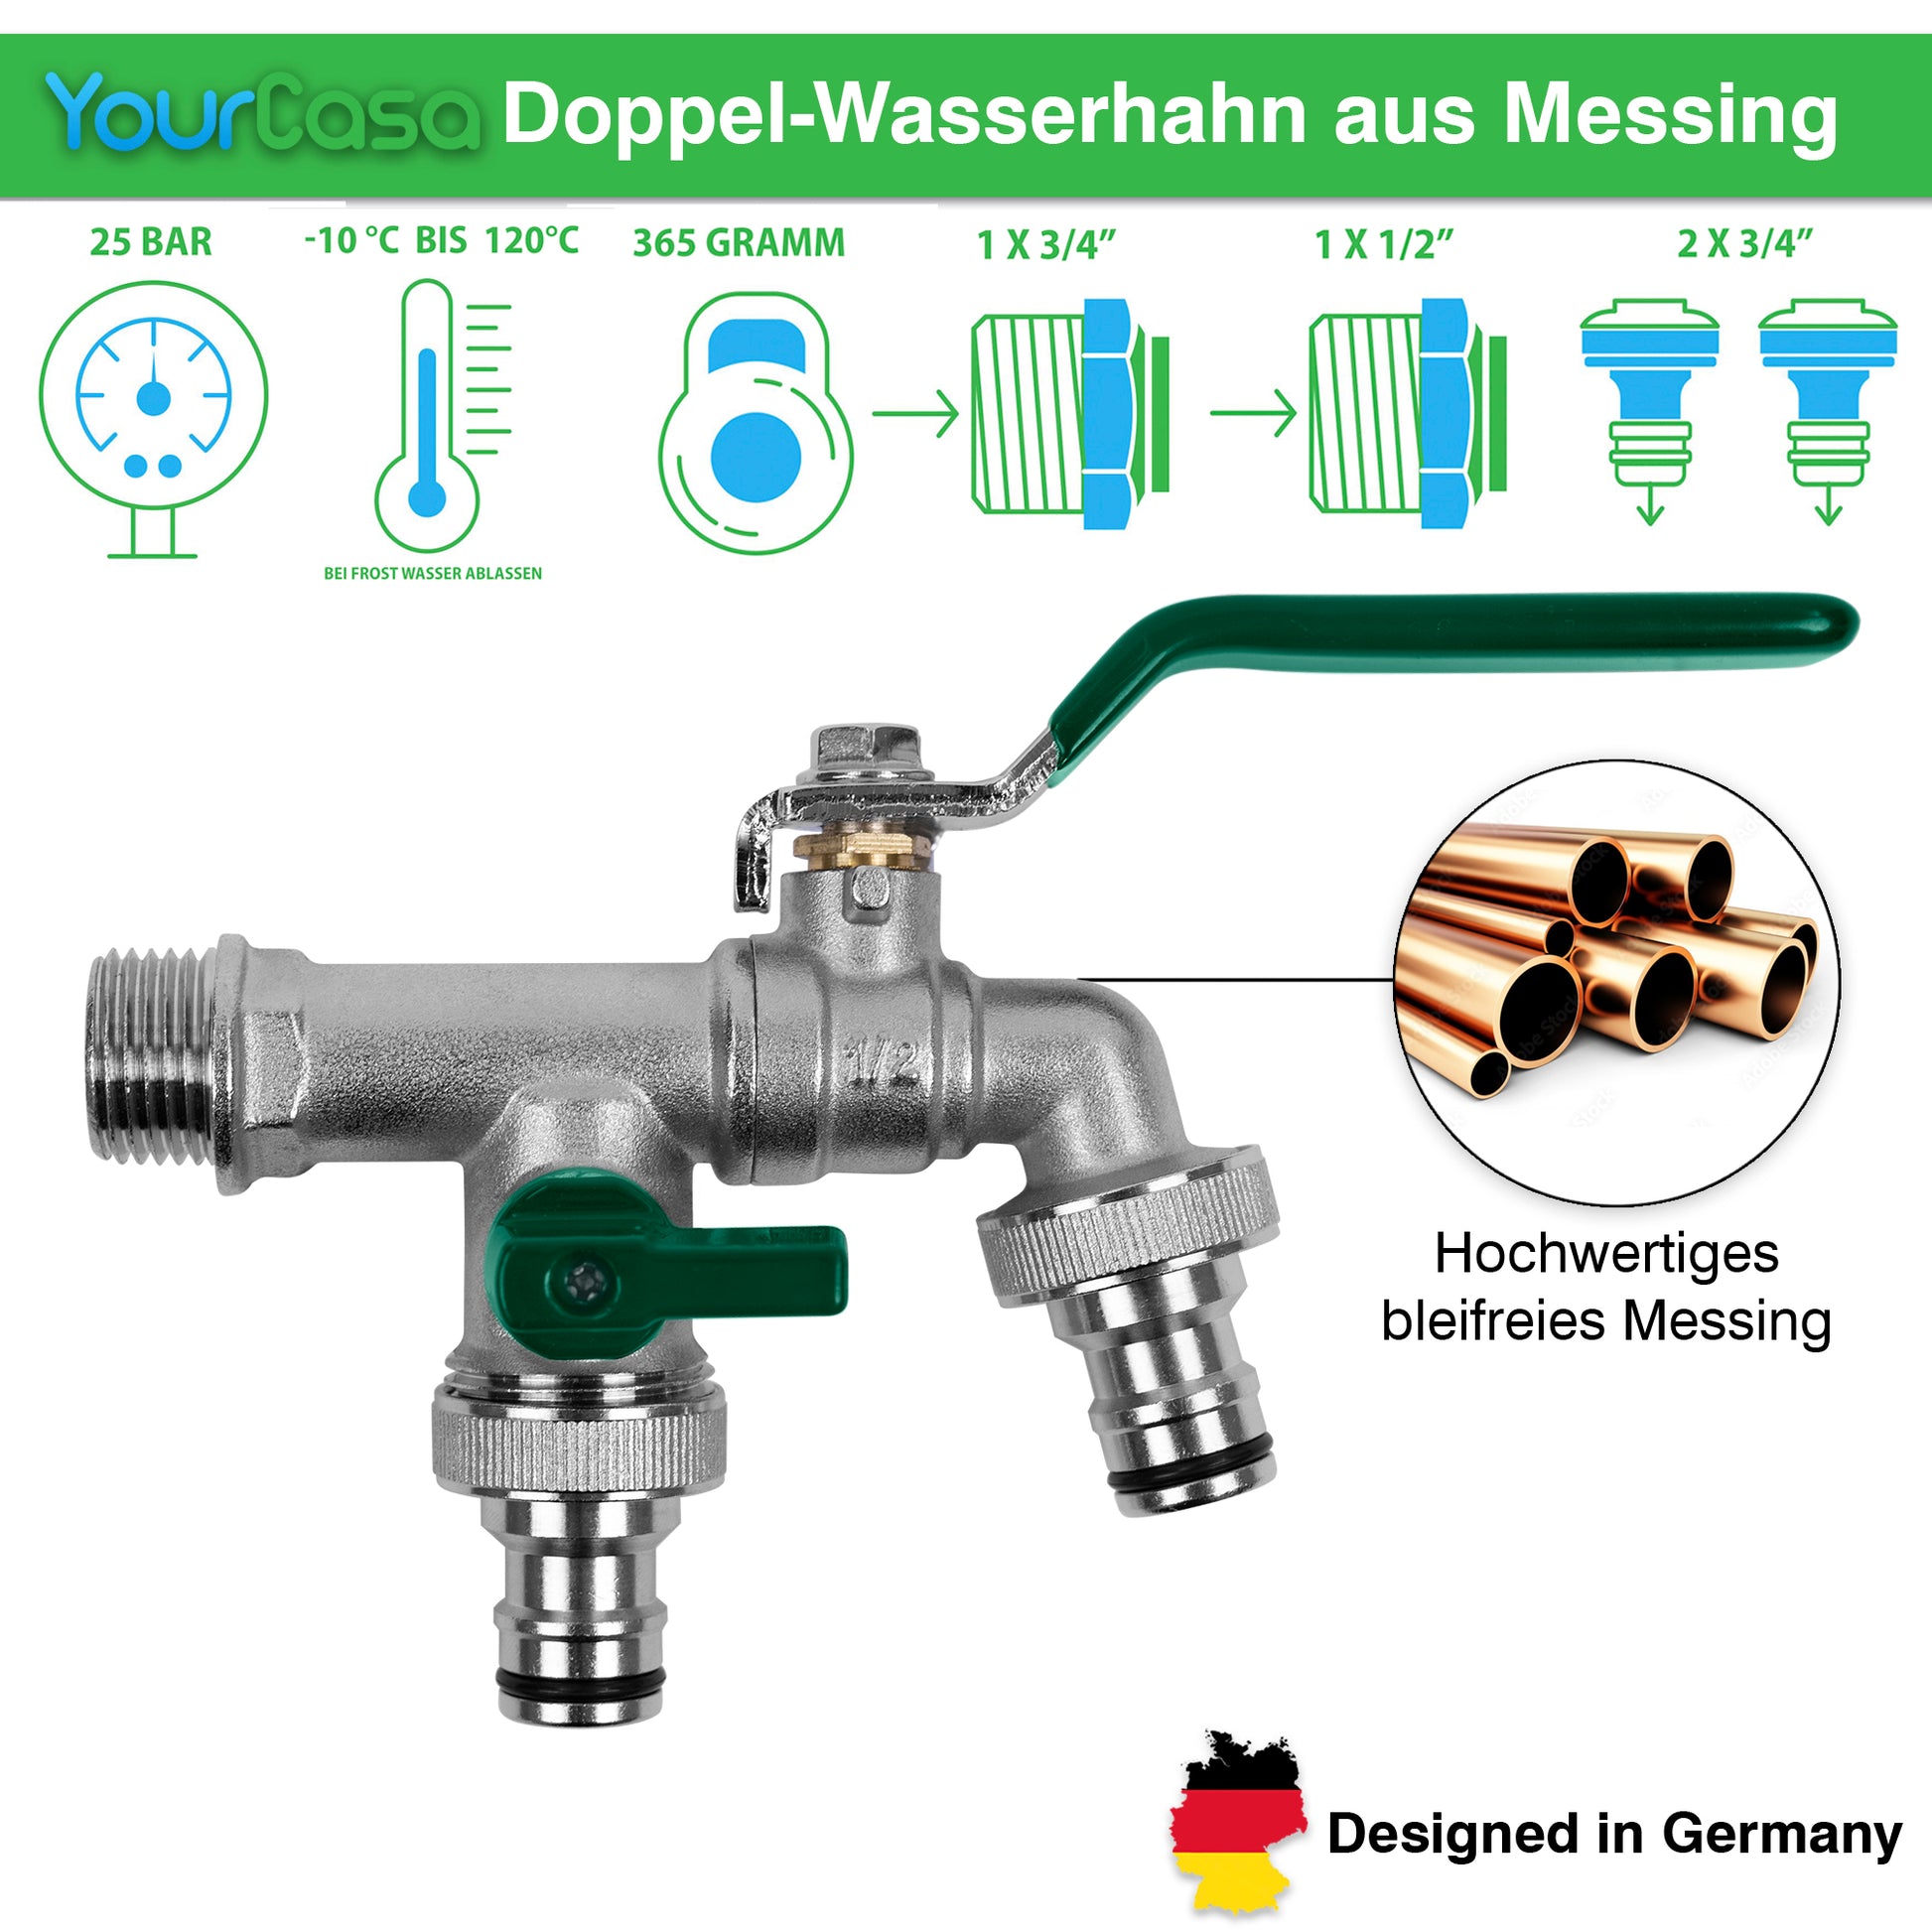 YourCasa® Regensammler [Downpipe50] + Wasserhahn Messing mit grünem Hebel, hervorgehobenen Funktionen, Absperrhahn und „designed in Germany“-Label von yourcasa-de.